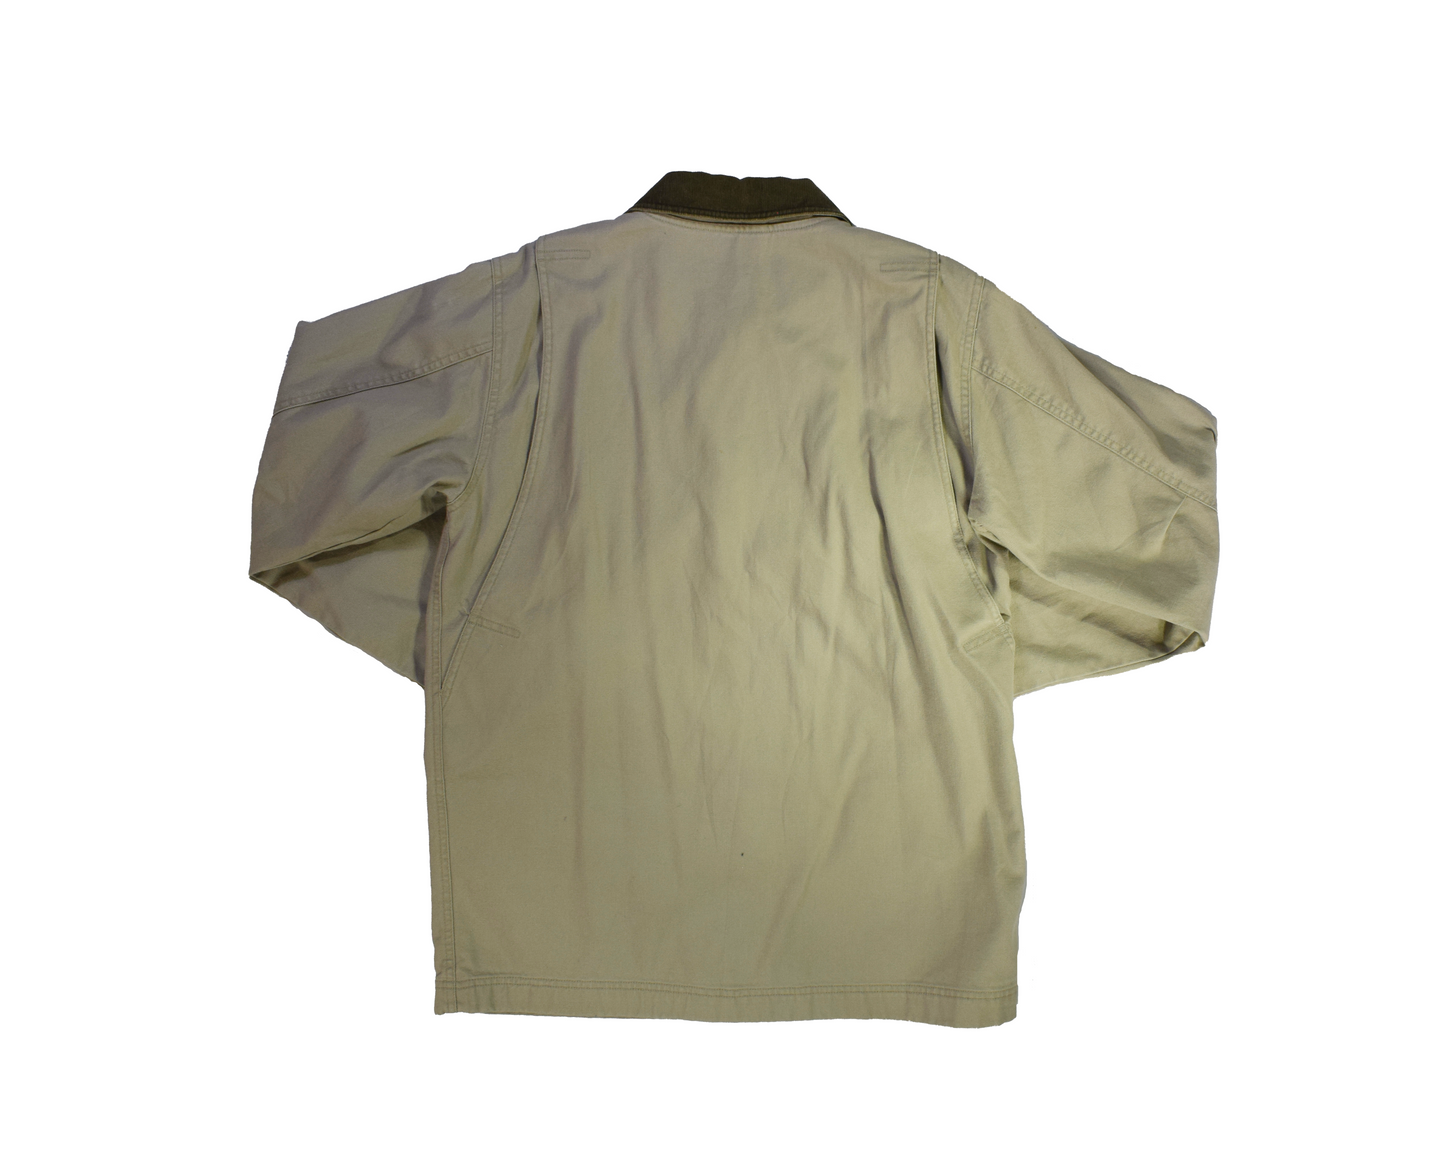 Vintage LLBean Brown Jacket